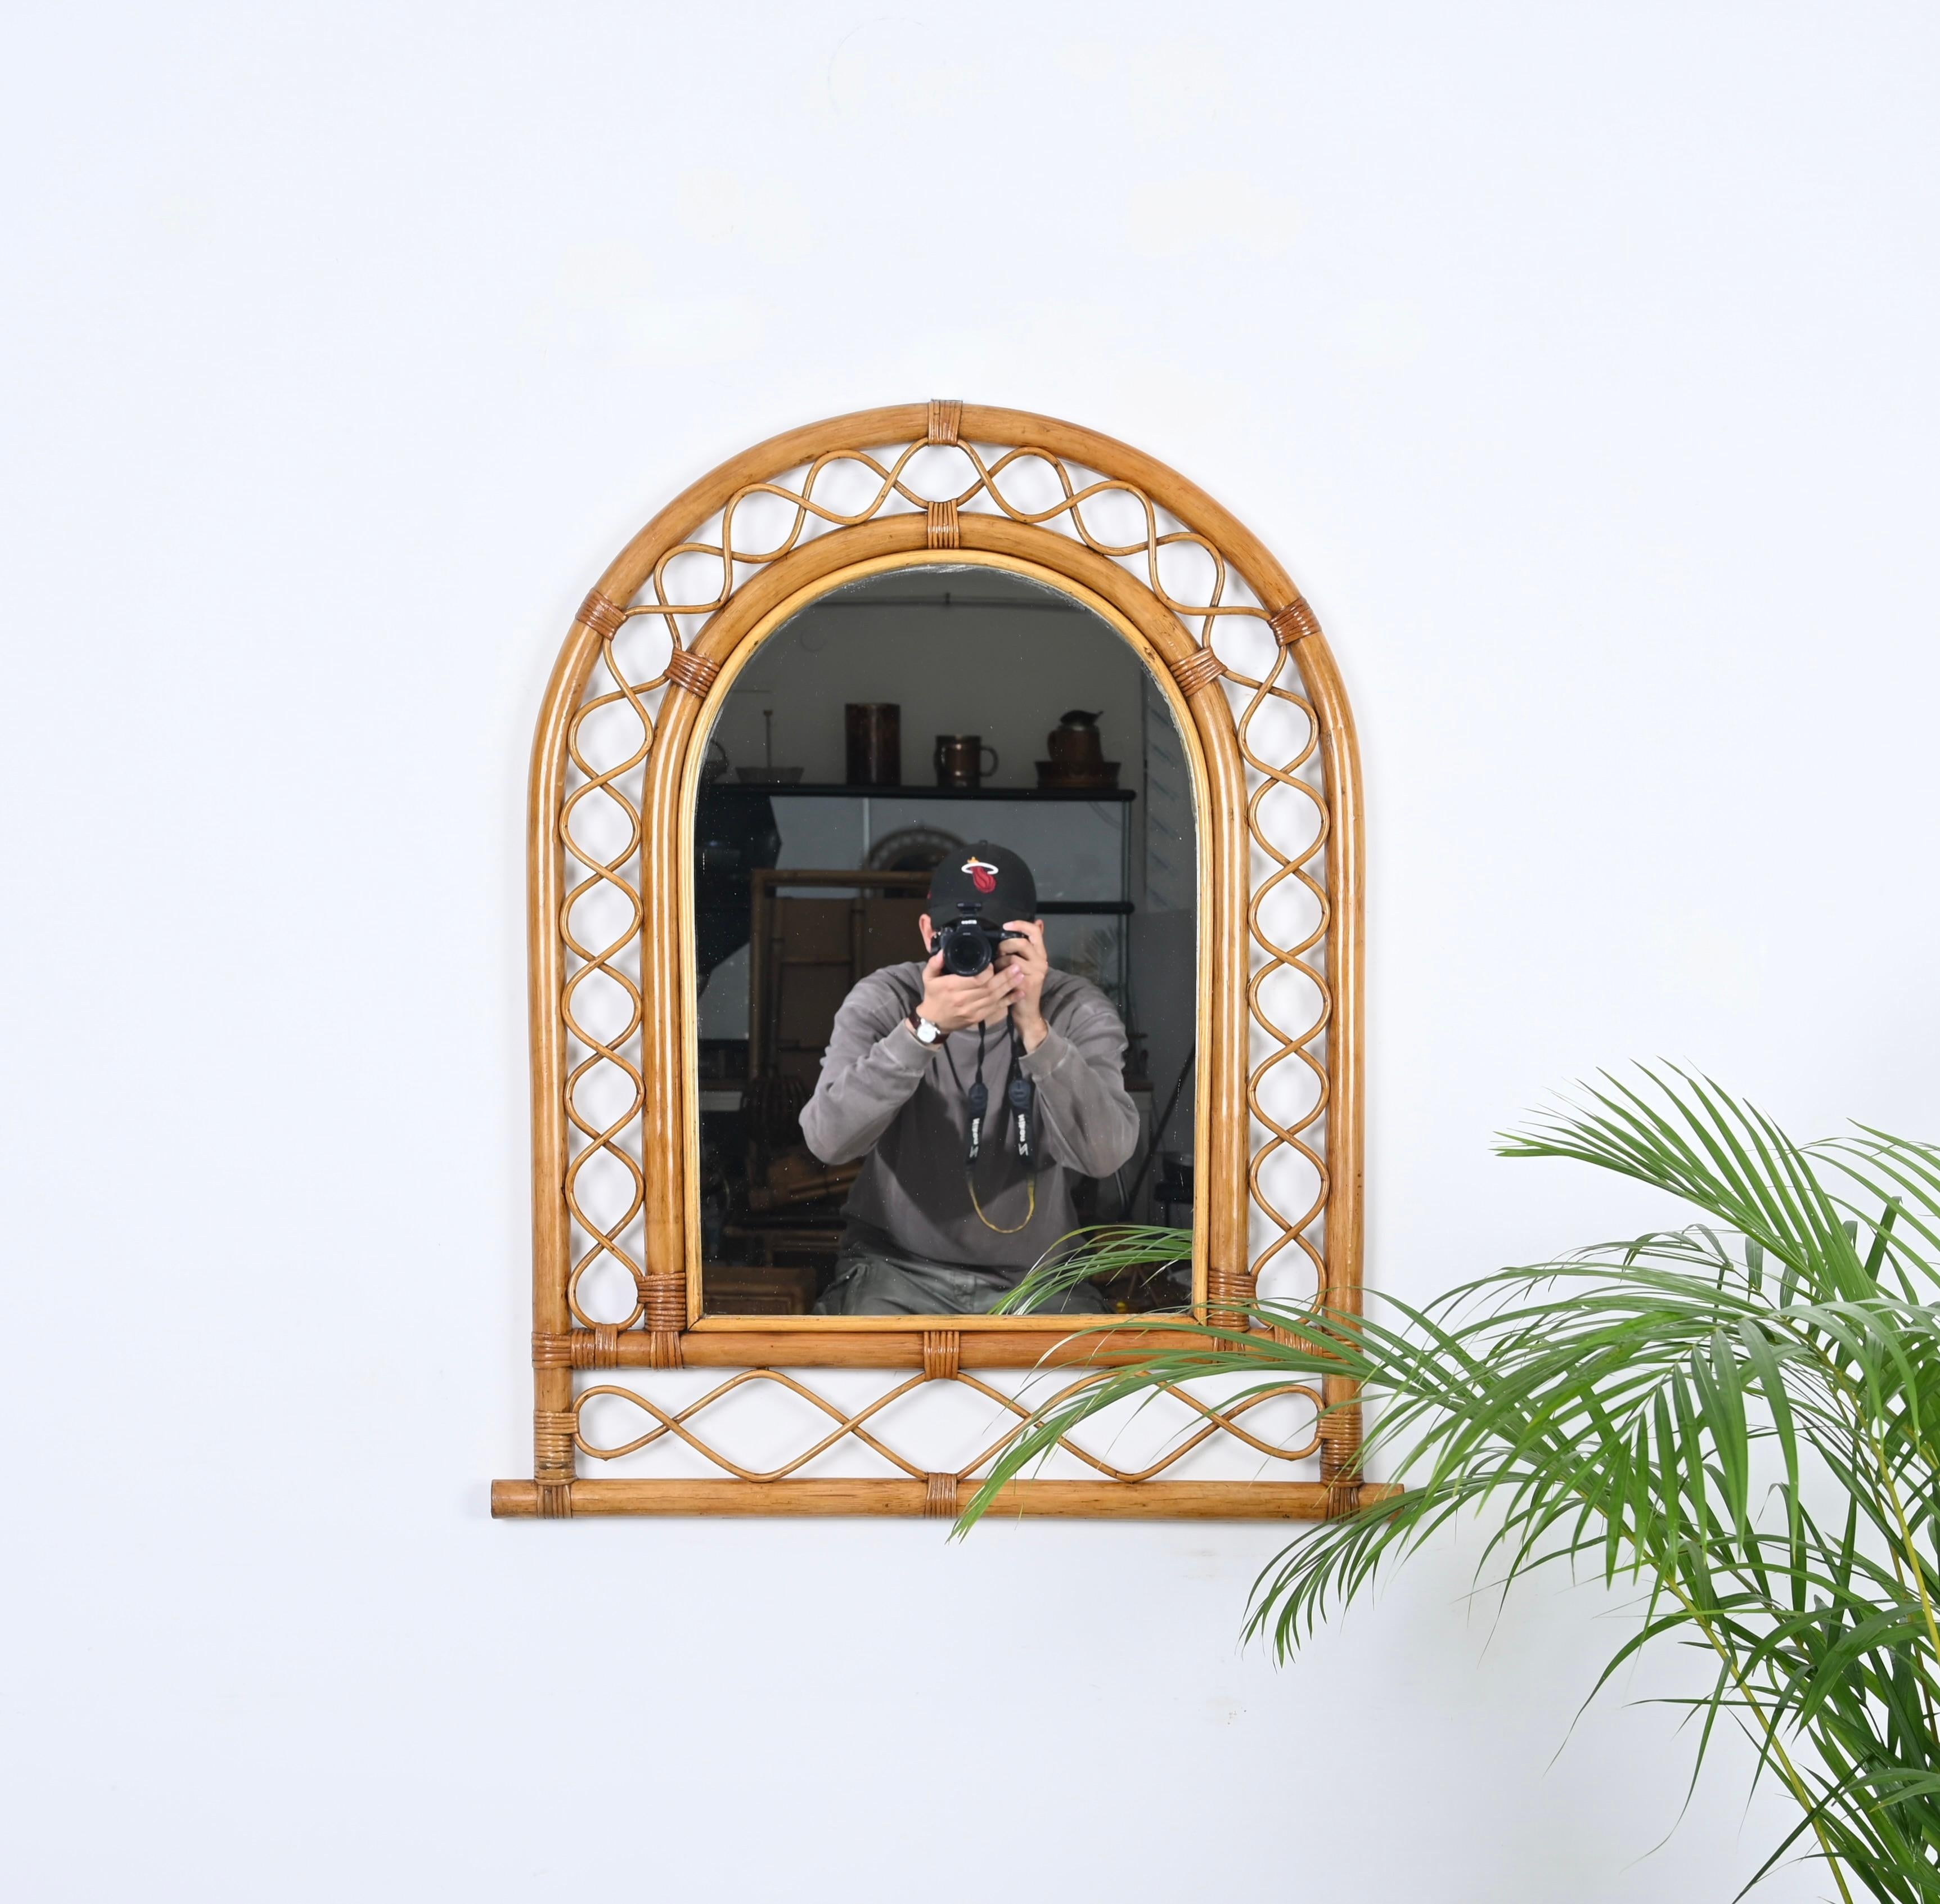 Wunderschöner bogenförmiger Wandspiegel im Côte d'Azur-Stil aus Bambus, Rattan und Weide. Dieser fantastische Artikel wurde in den 1960er Jahren in Italien hergestellt.

und dazwischen sinusförmige Verzierungen aus gebogenem Rattan. Das Ganze wird